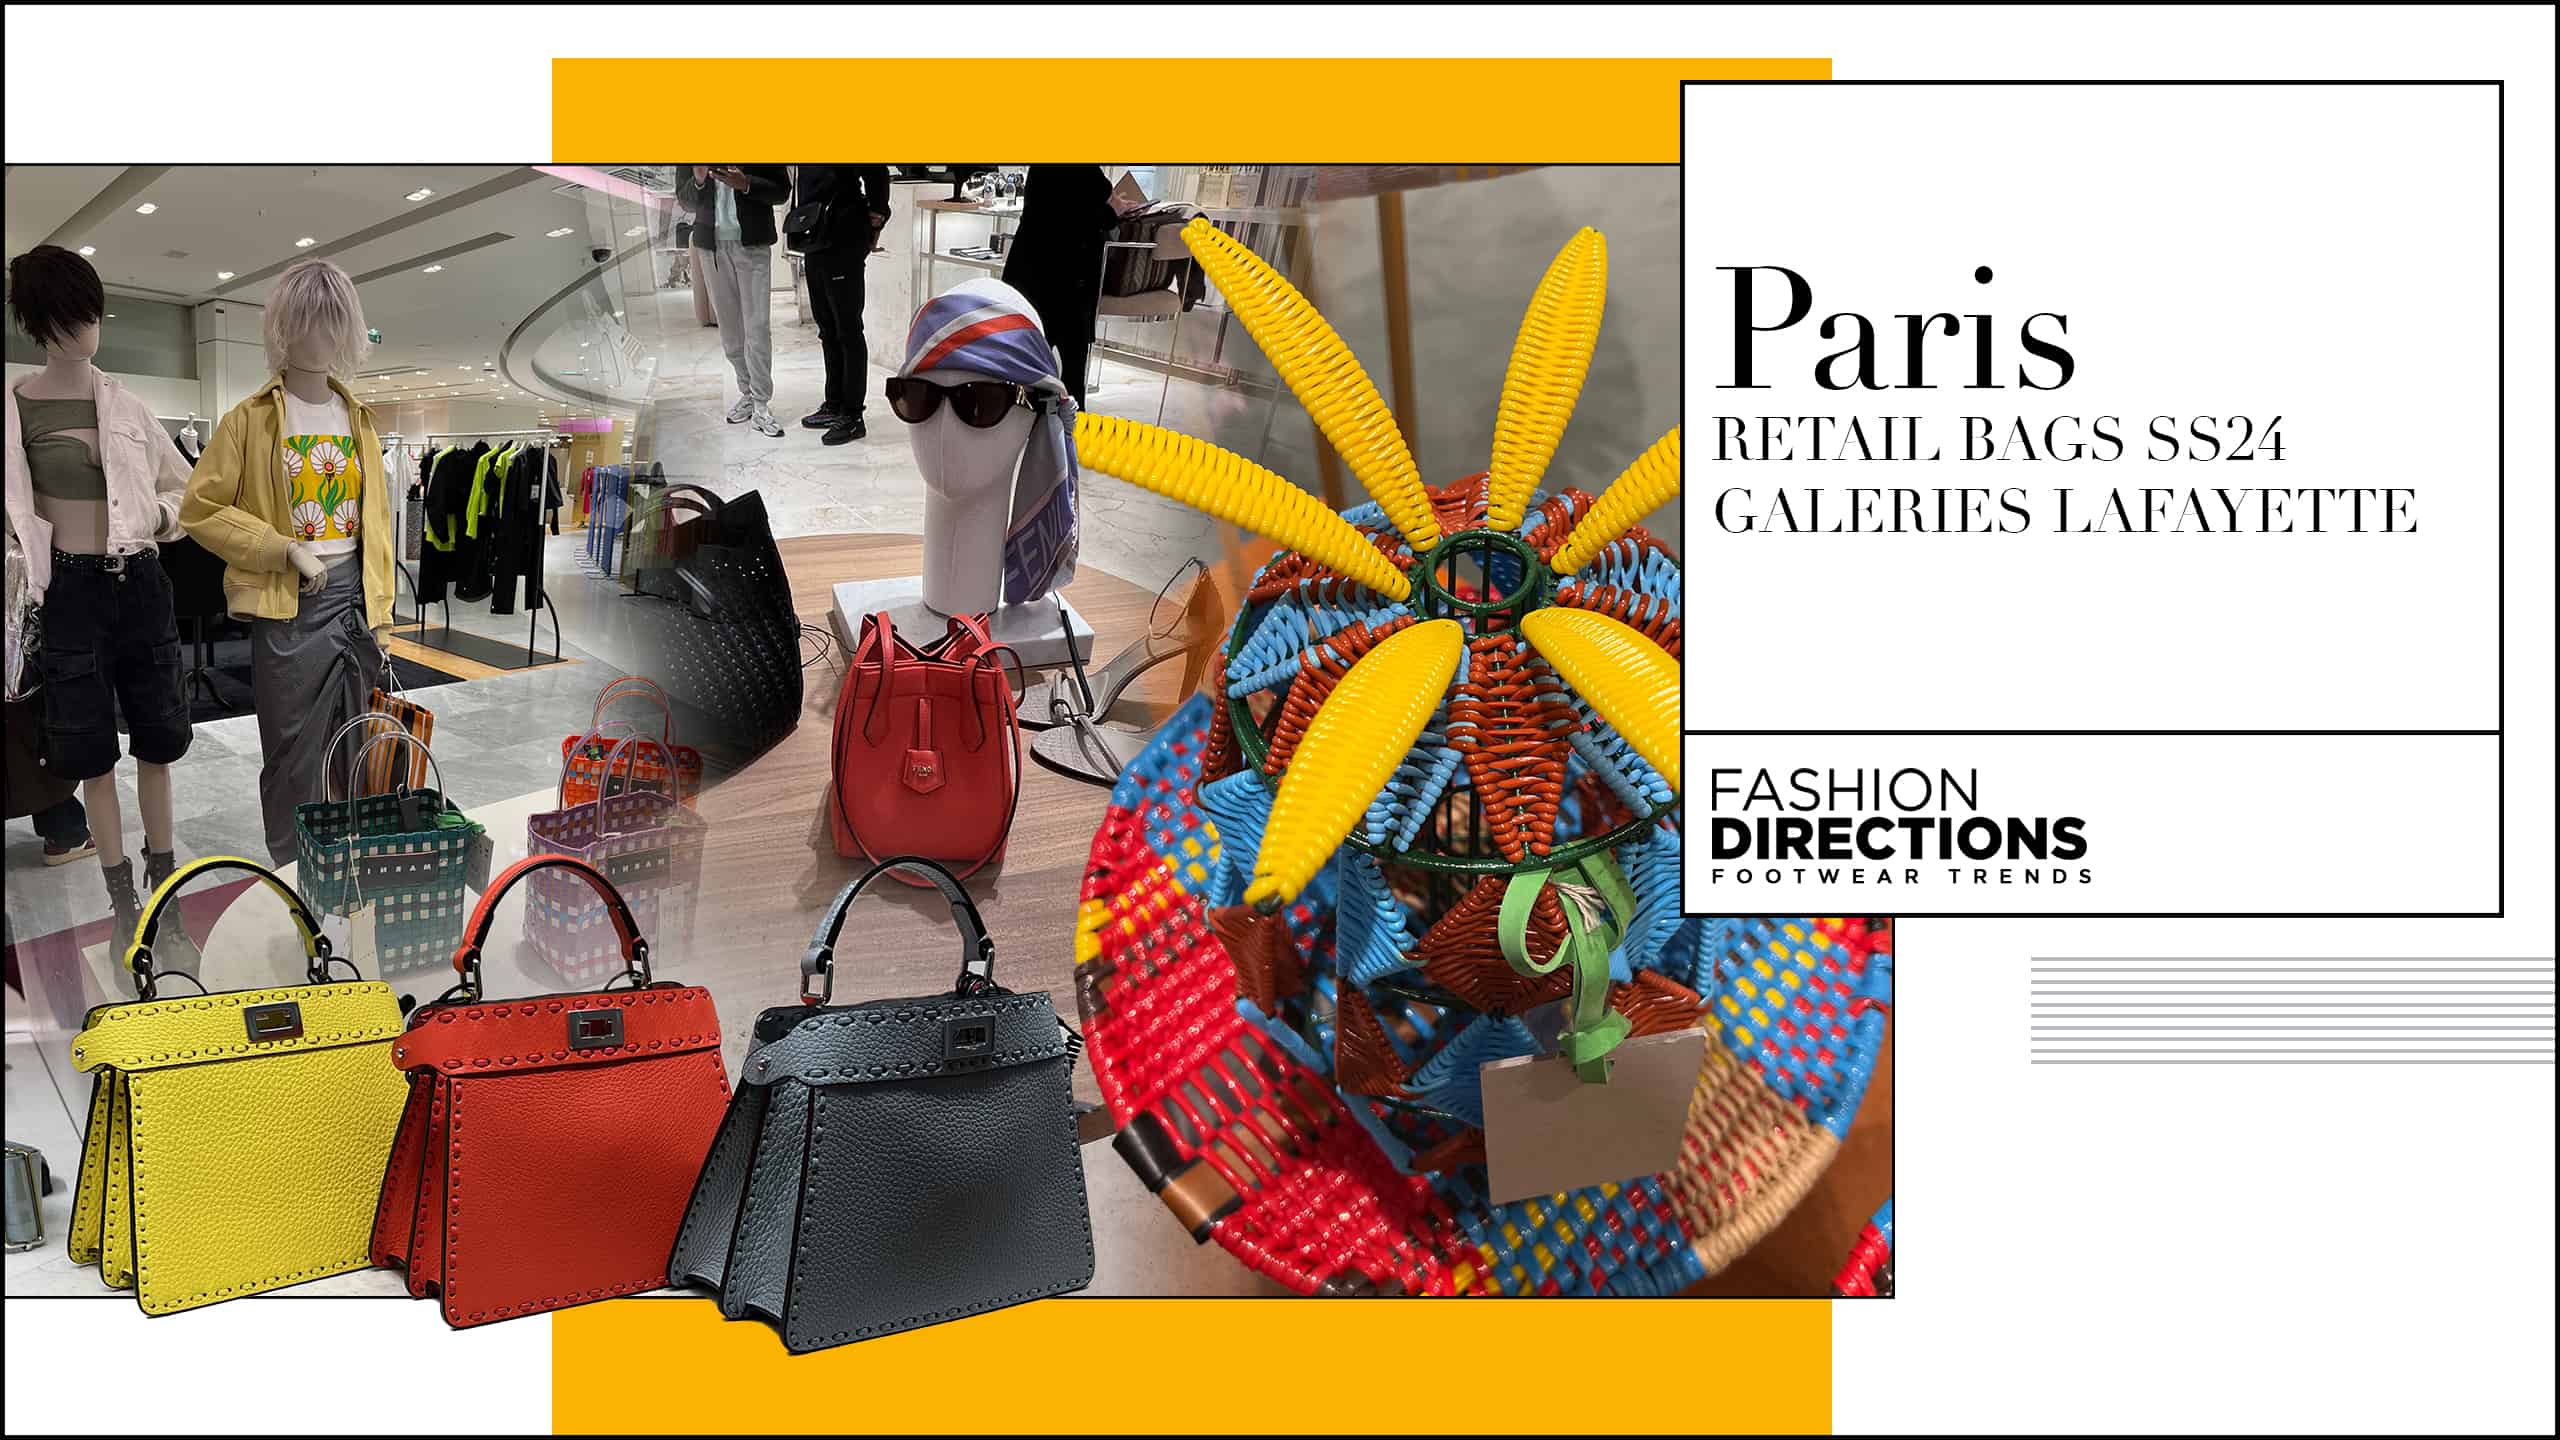 Paris Retail Bags ss24 Galeries Lafayette